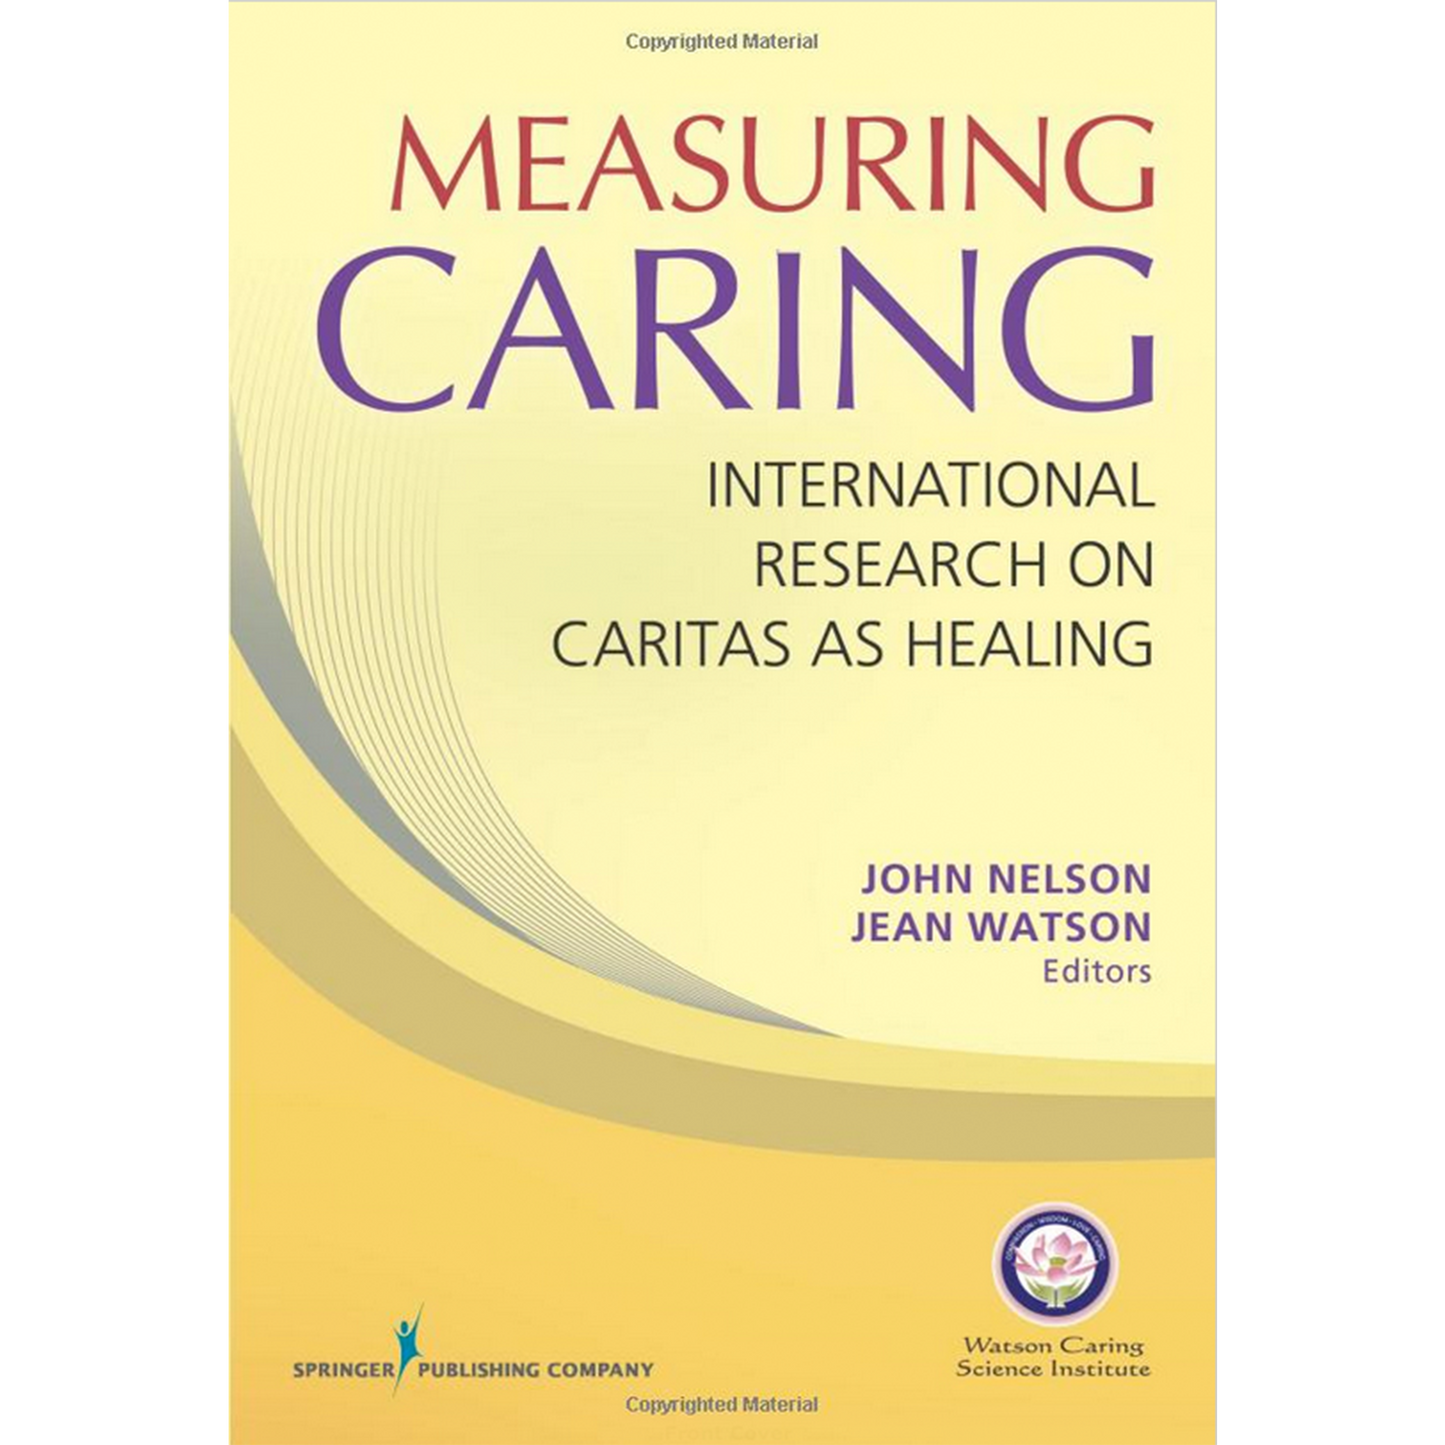 Measuring Caring: International Research on Caritas as Healing